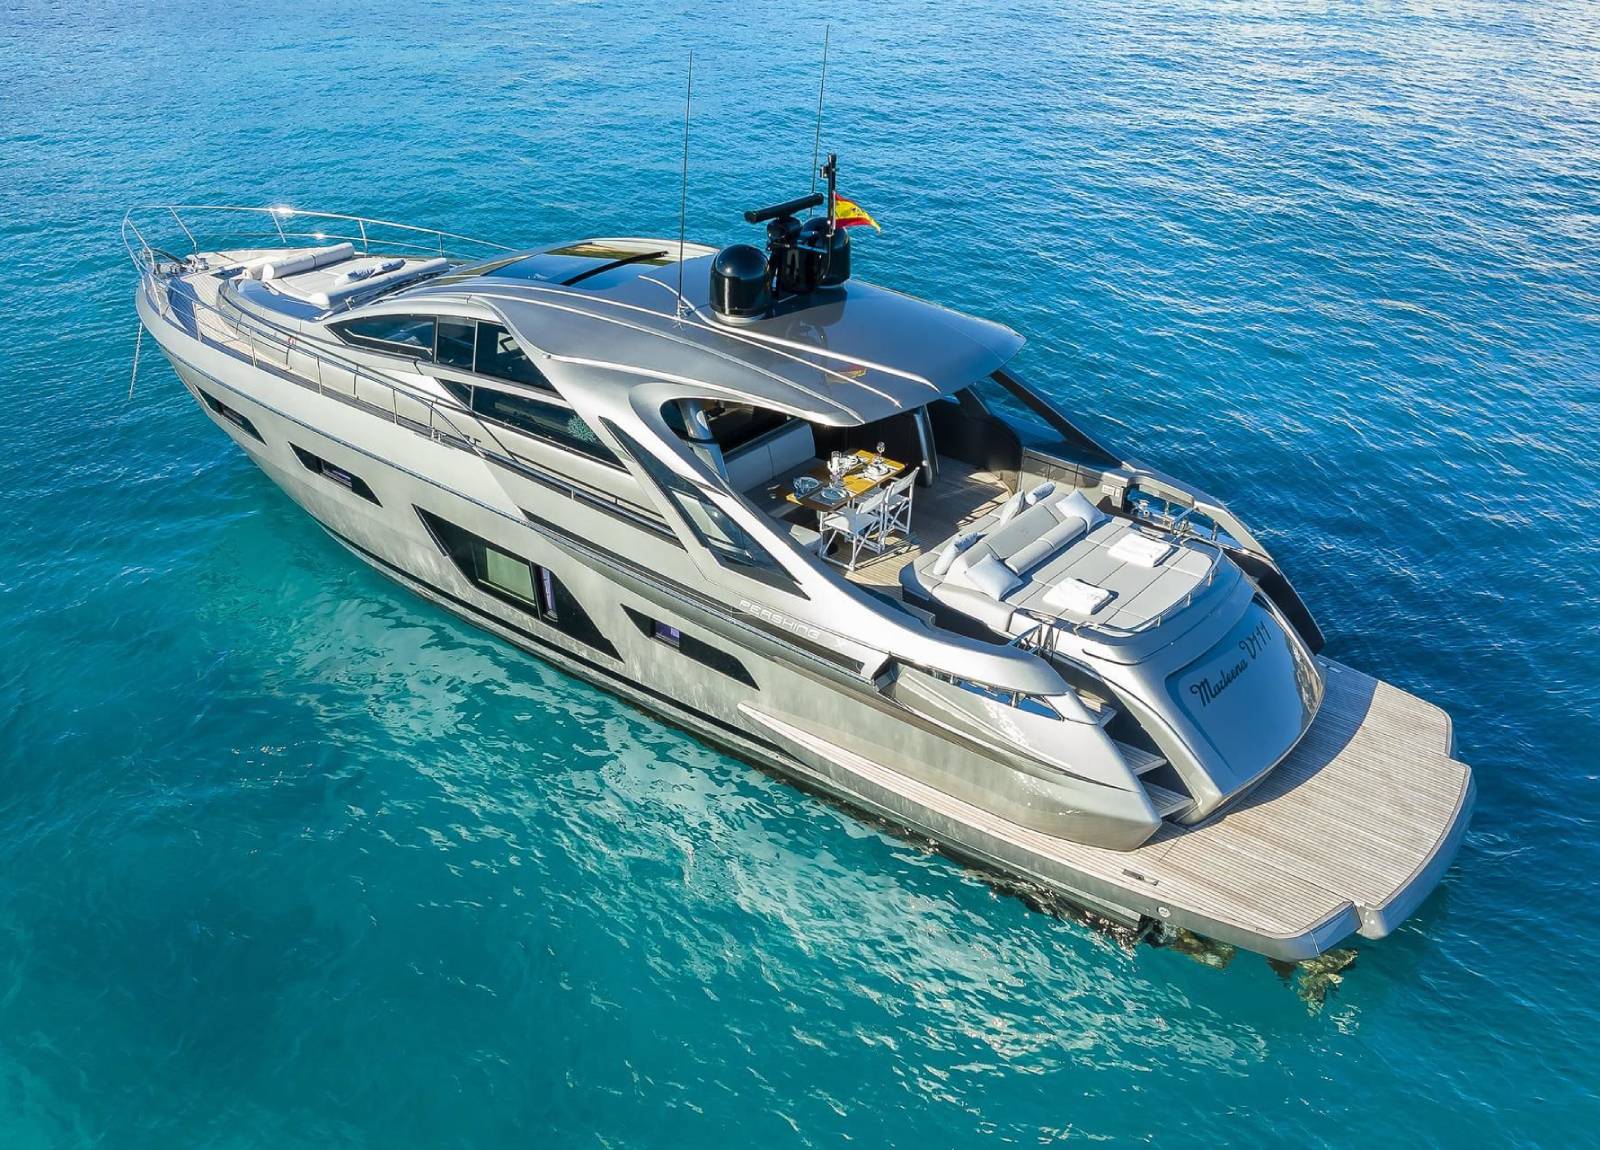 Barco de motor EN CHARTER, de la marca Pershing modelo 7X y del año 2021, disponible en Marina Moll Vell Palma Mallorca España